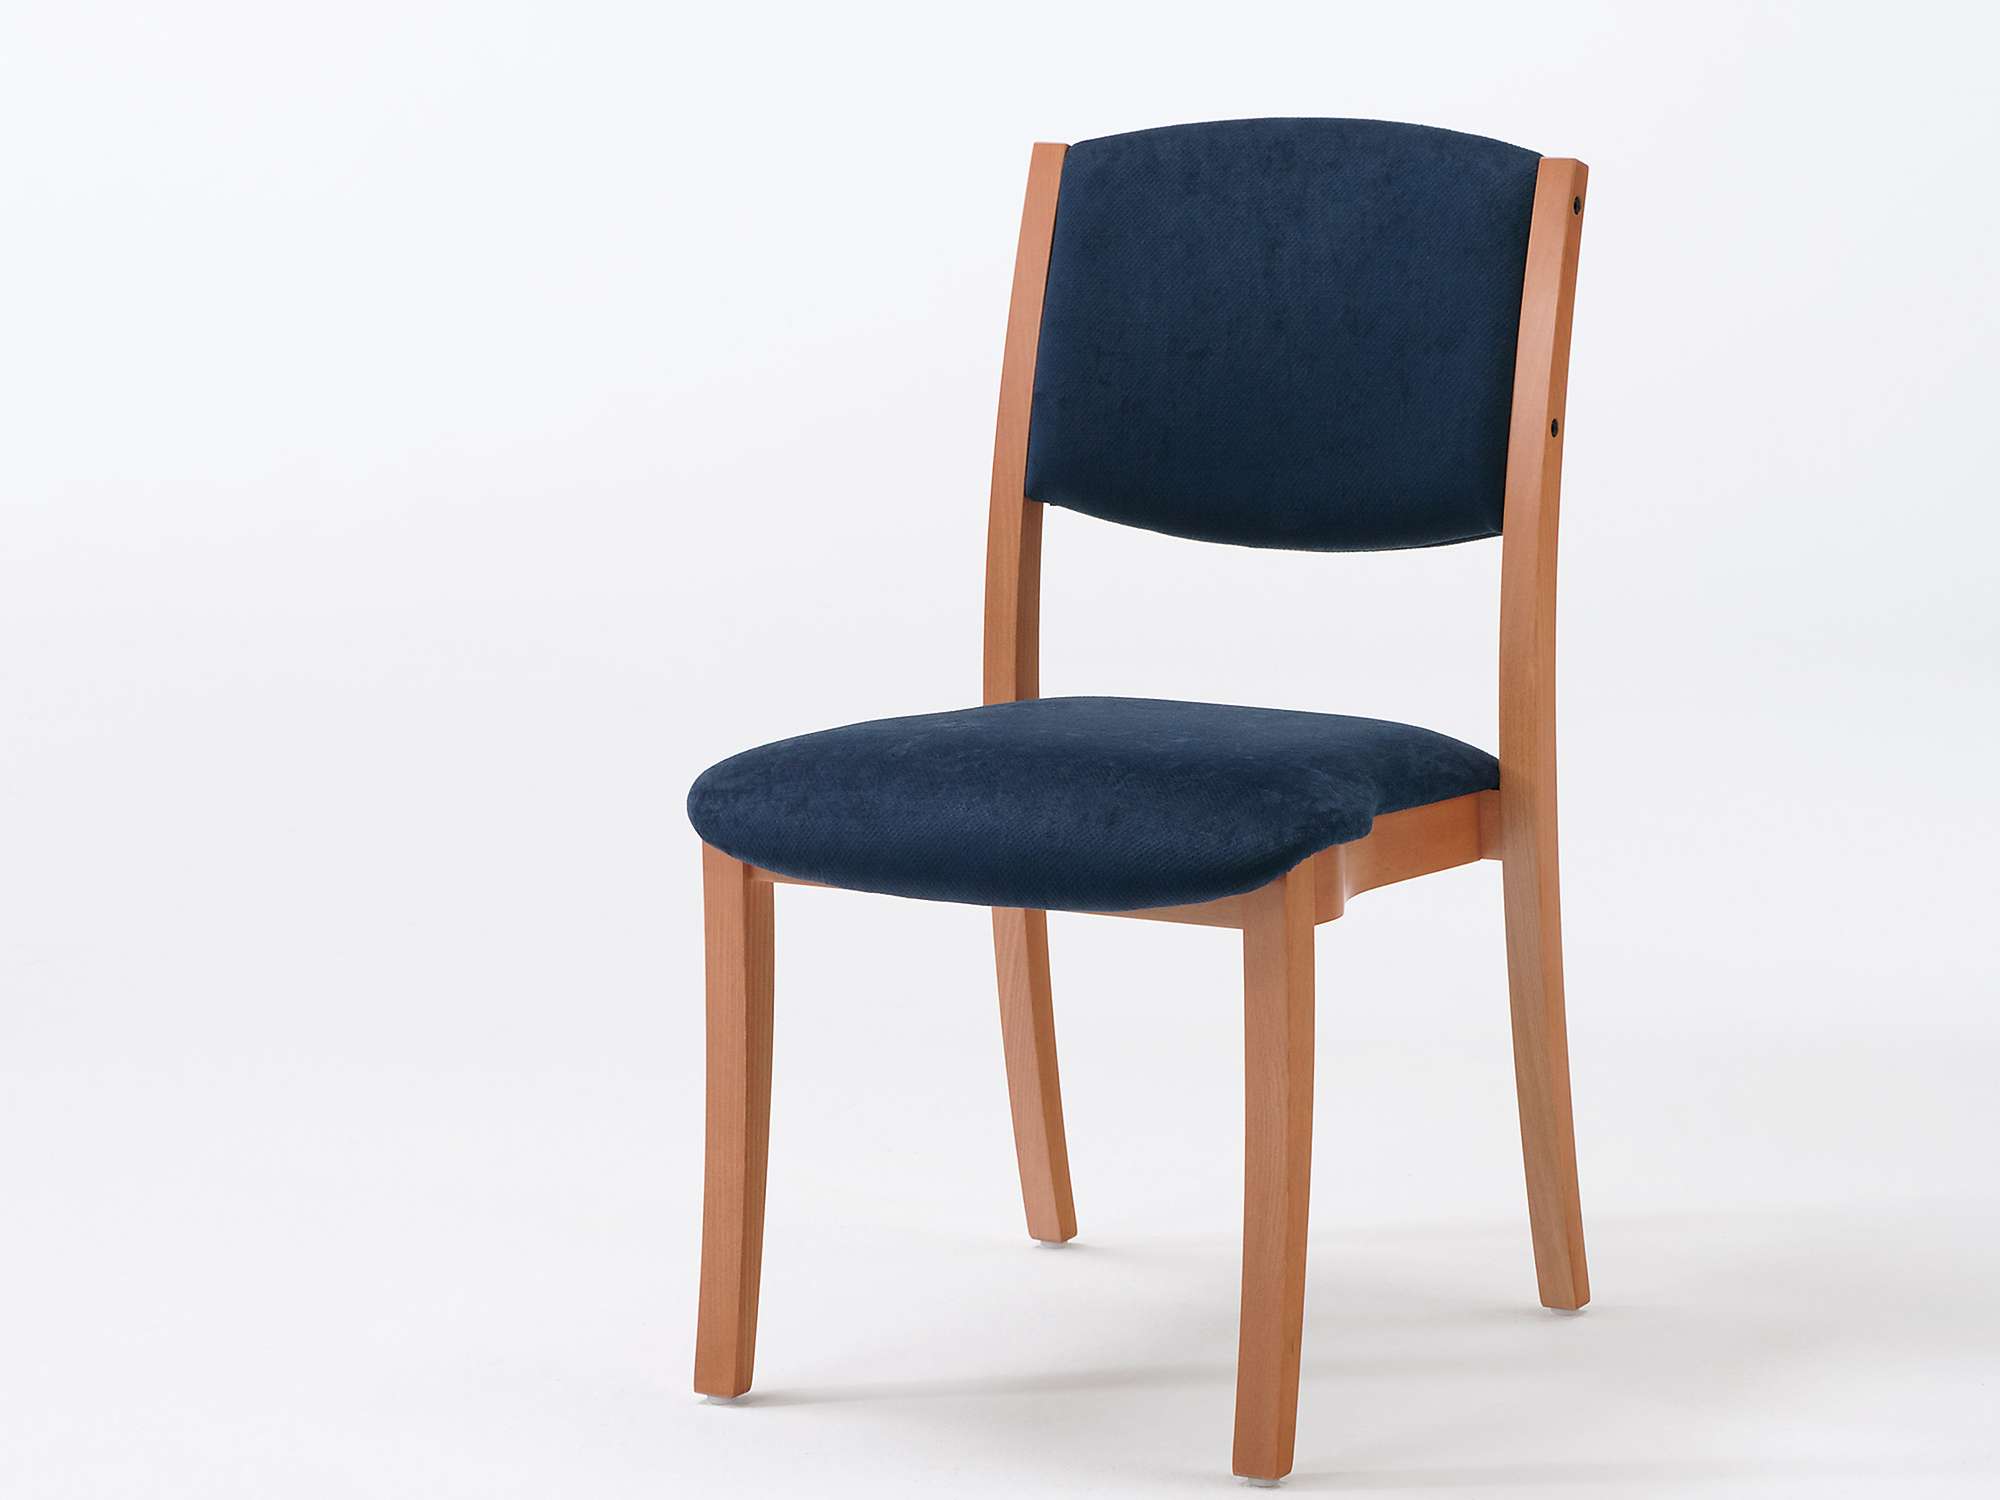 Modèle Sedego version chaise empilable